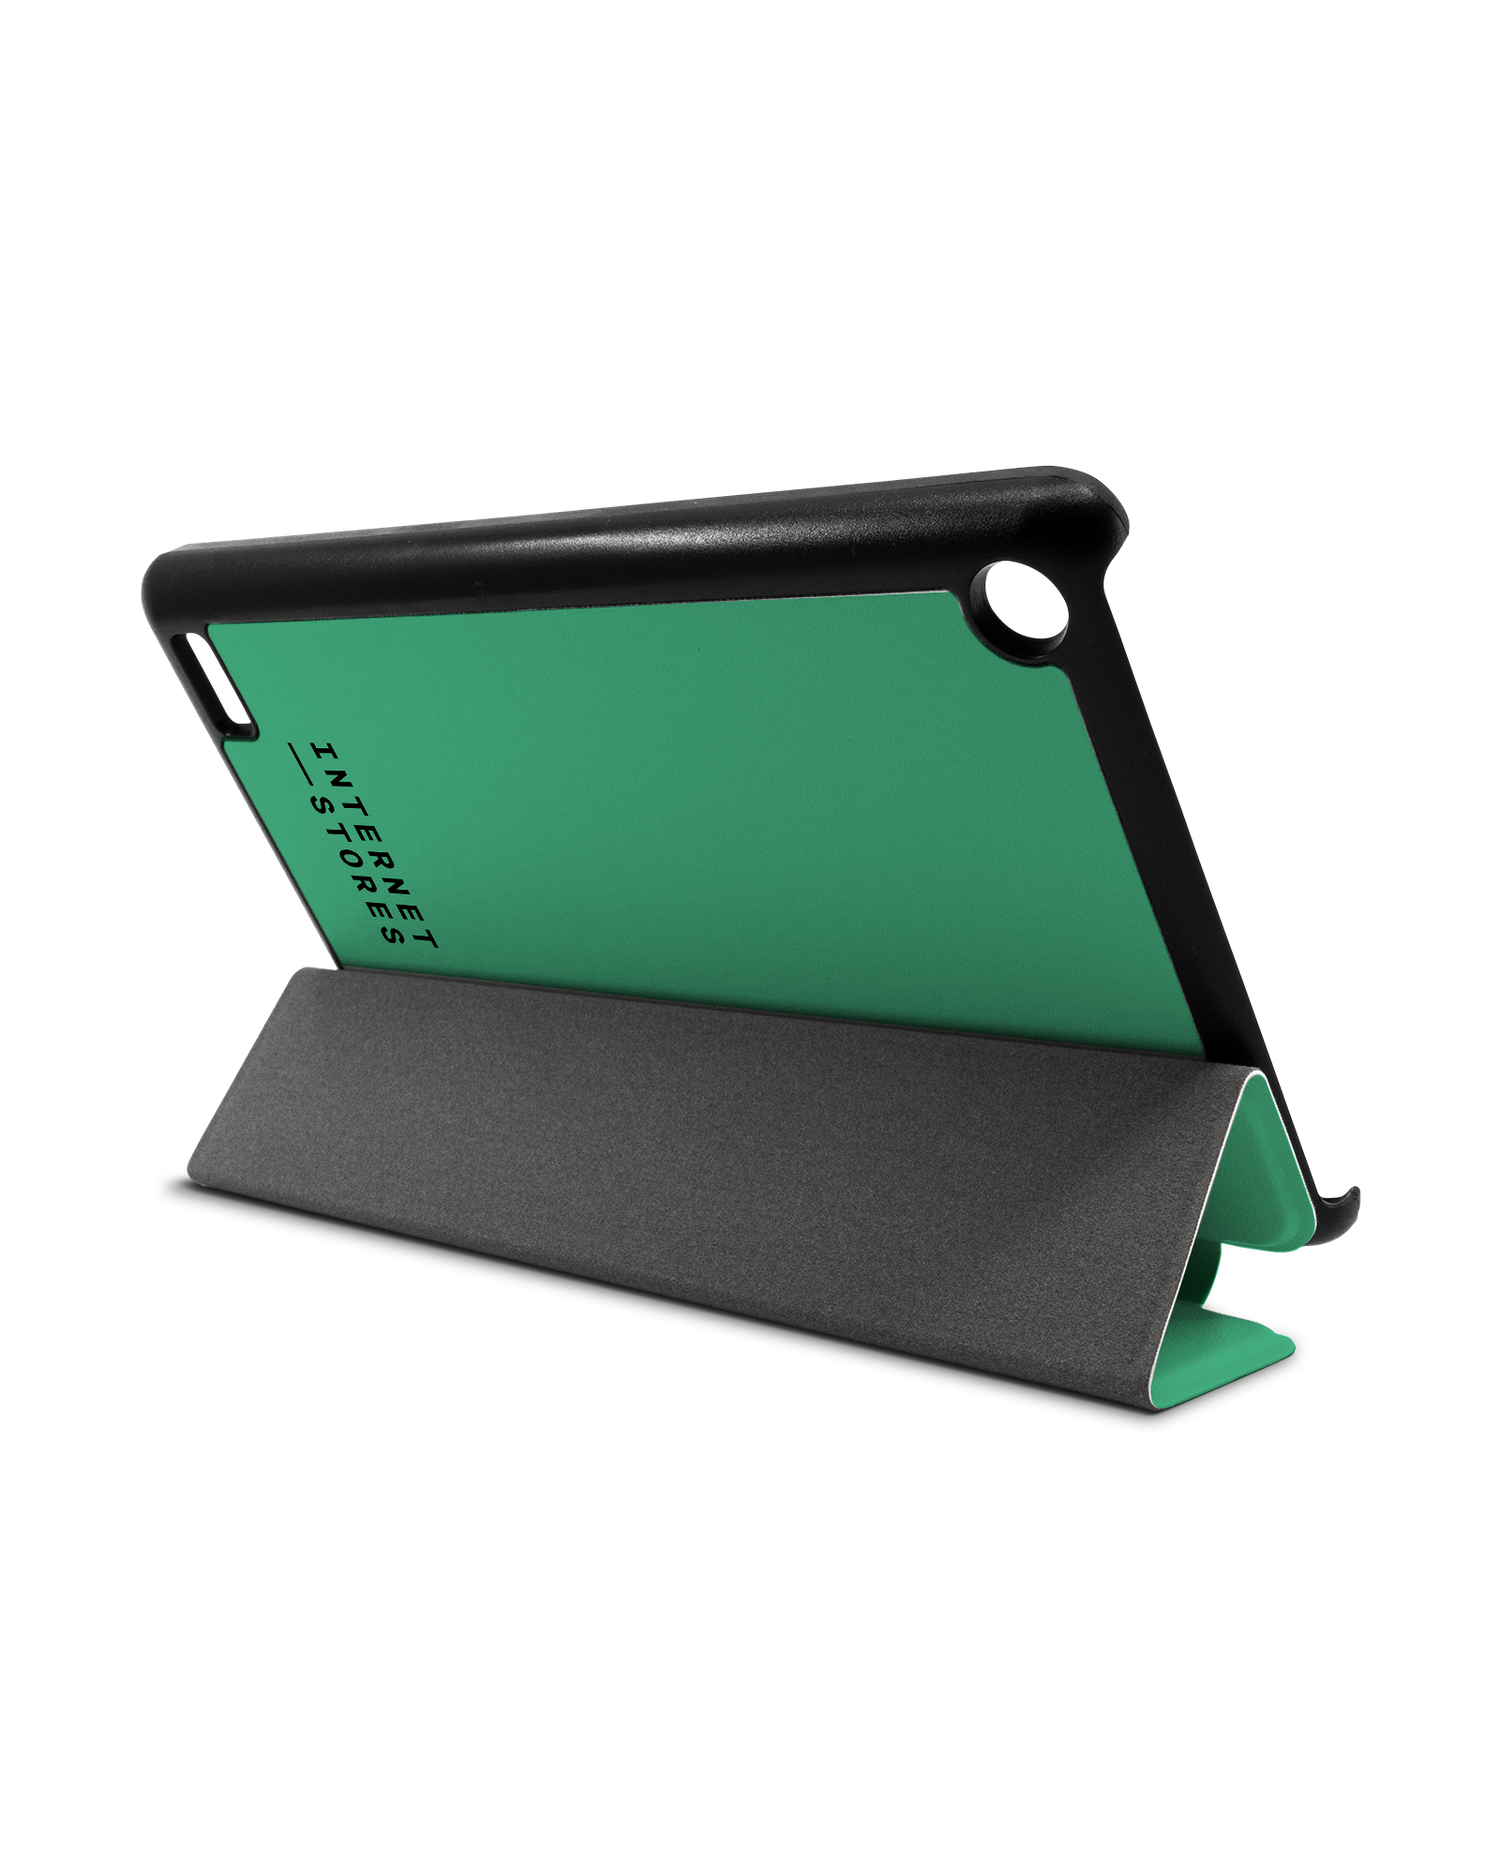 ISG Neon Green Tablet Smart Case für Amazon Fire 7: Aufgestellt im Querformat